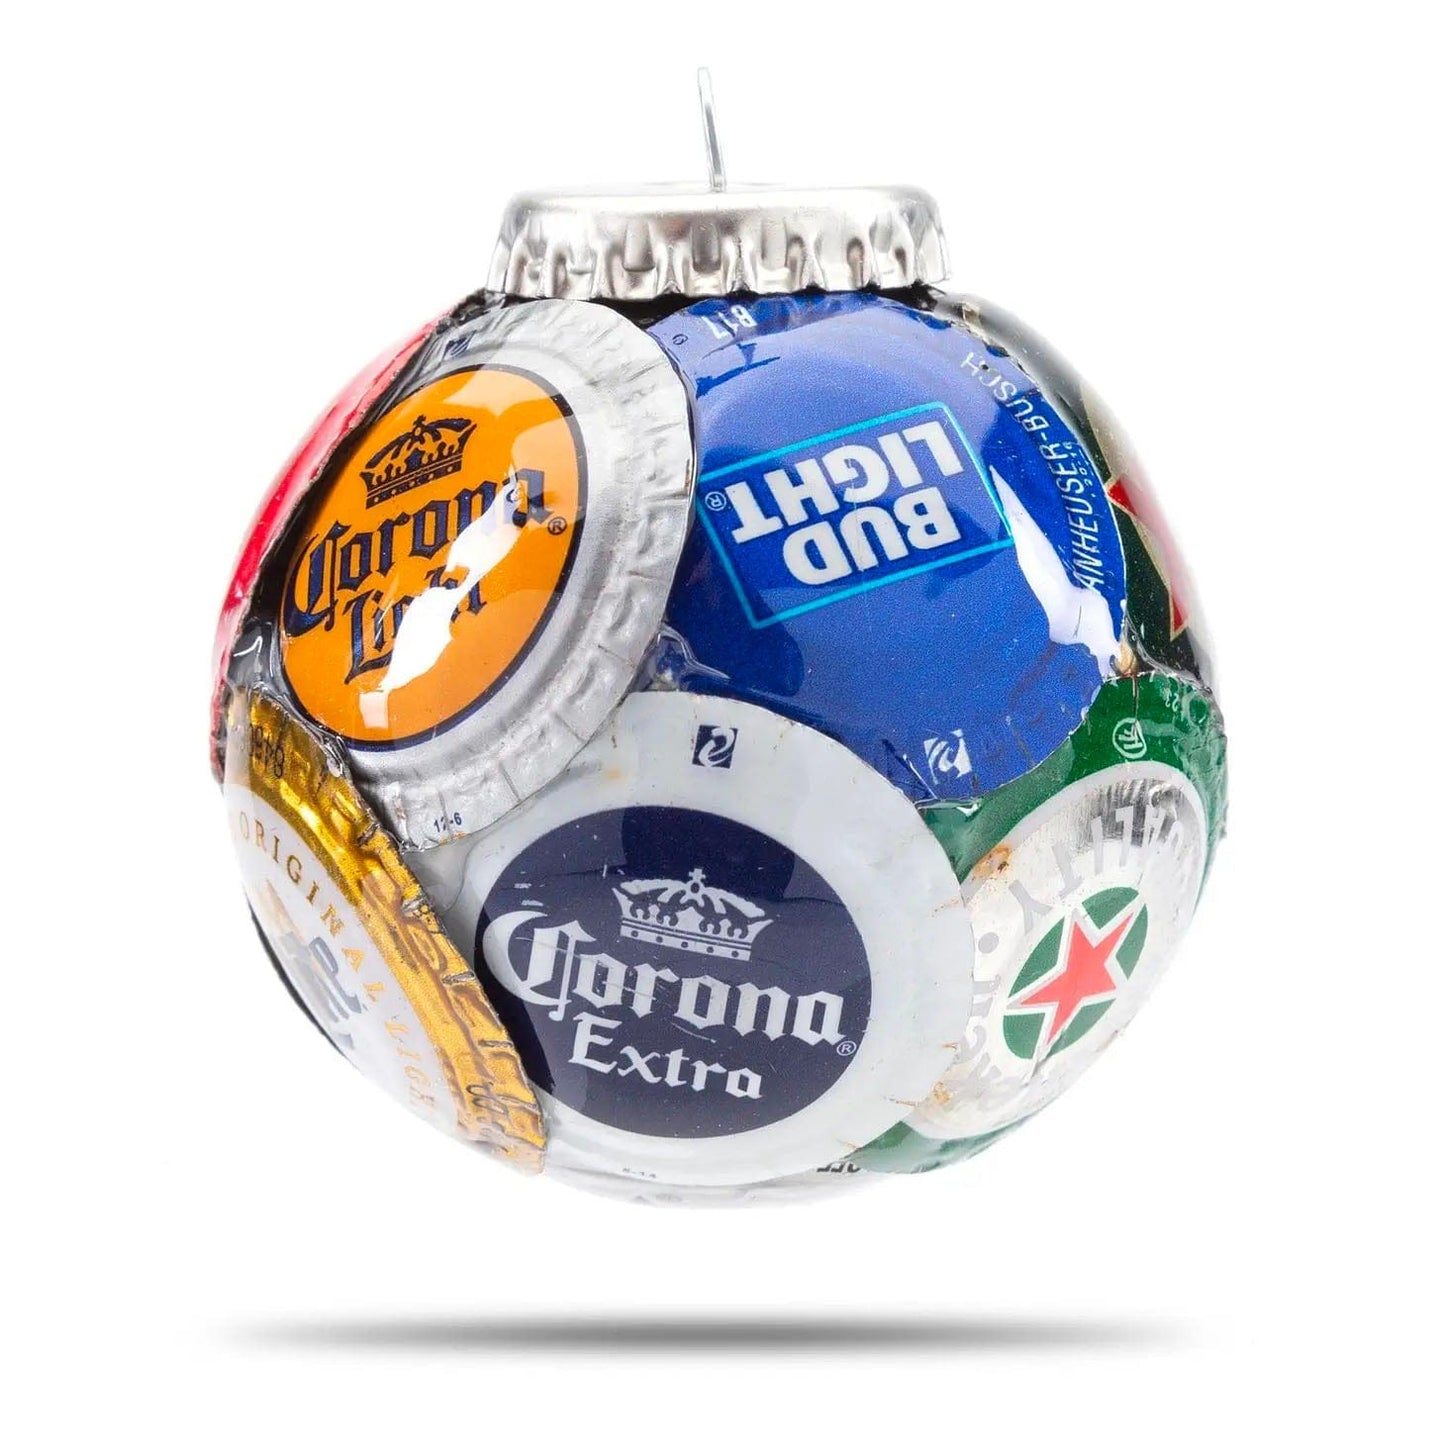 Bottle Cap Ornament - Major Beer Brands